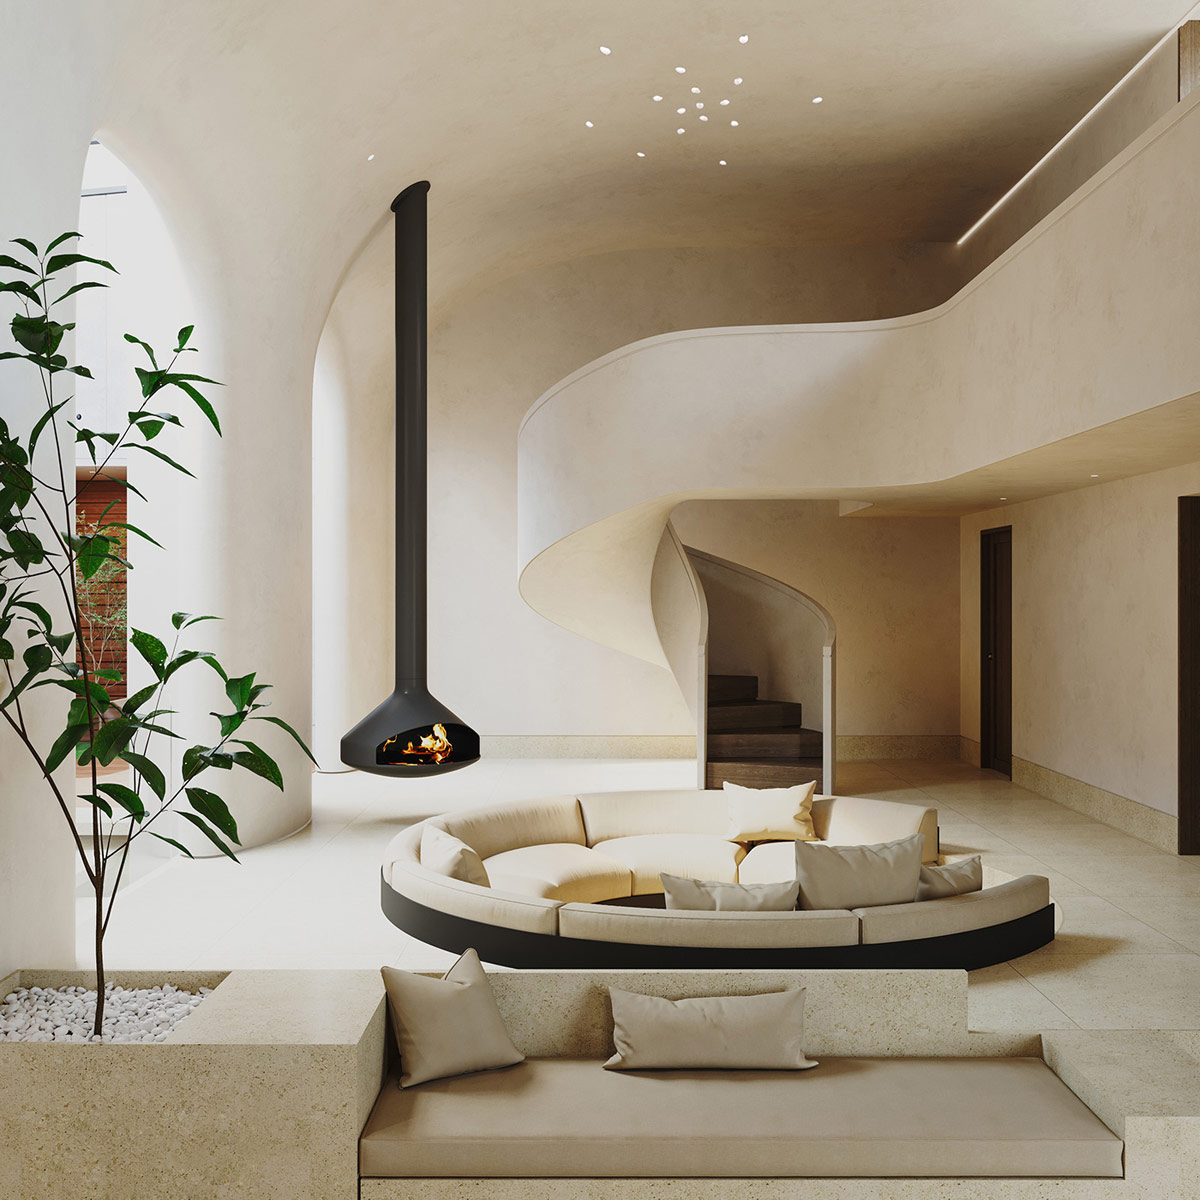 Interior de la casa color crema con diseño de escalera curvilínea y patio